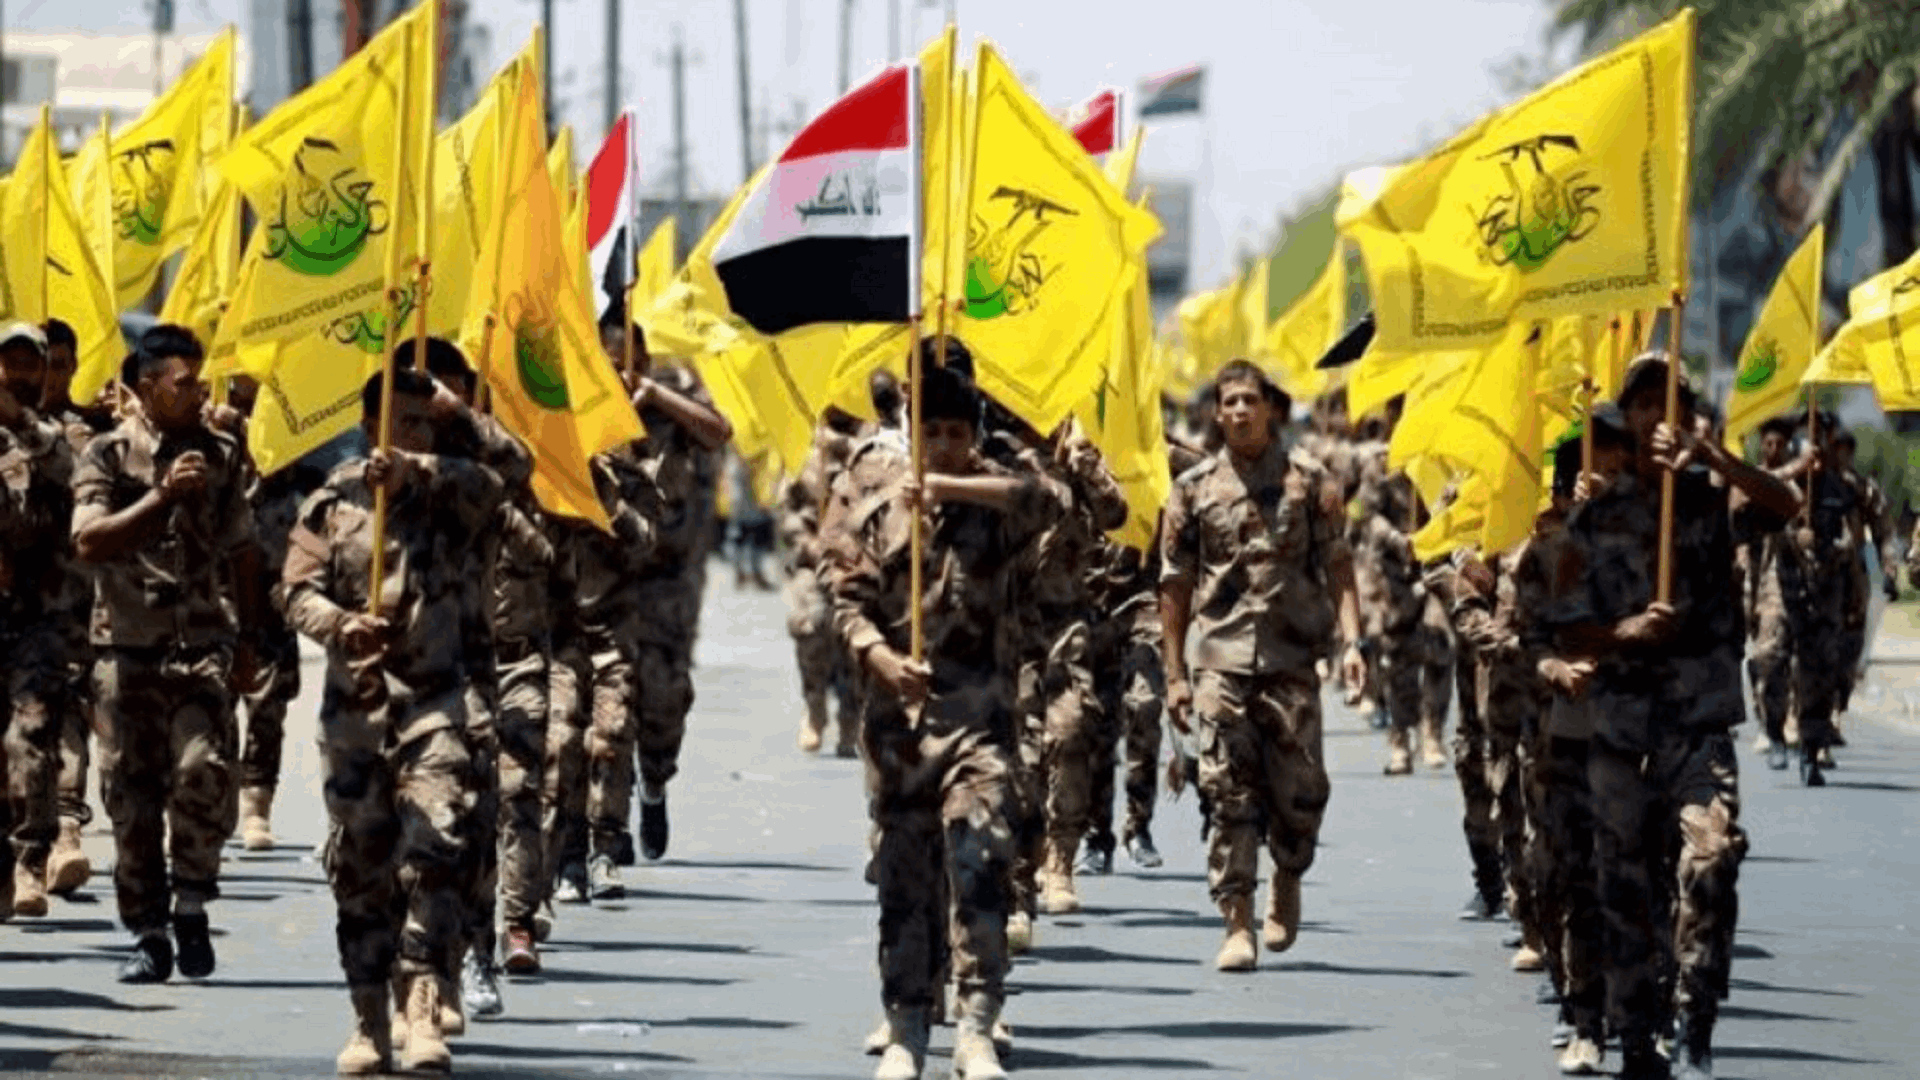 المقاومة الاسلامية في العراق: إستهدفنا هدفاً حيوياً في أراضينا المحتلة بالأسلحة المناسبة